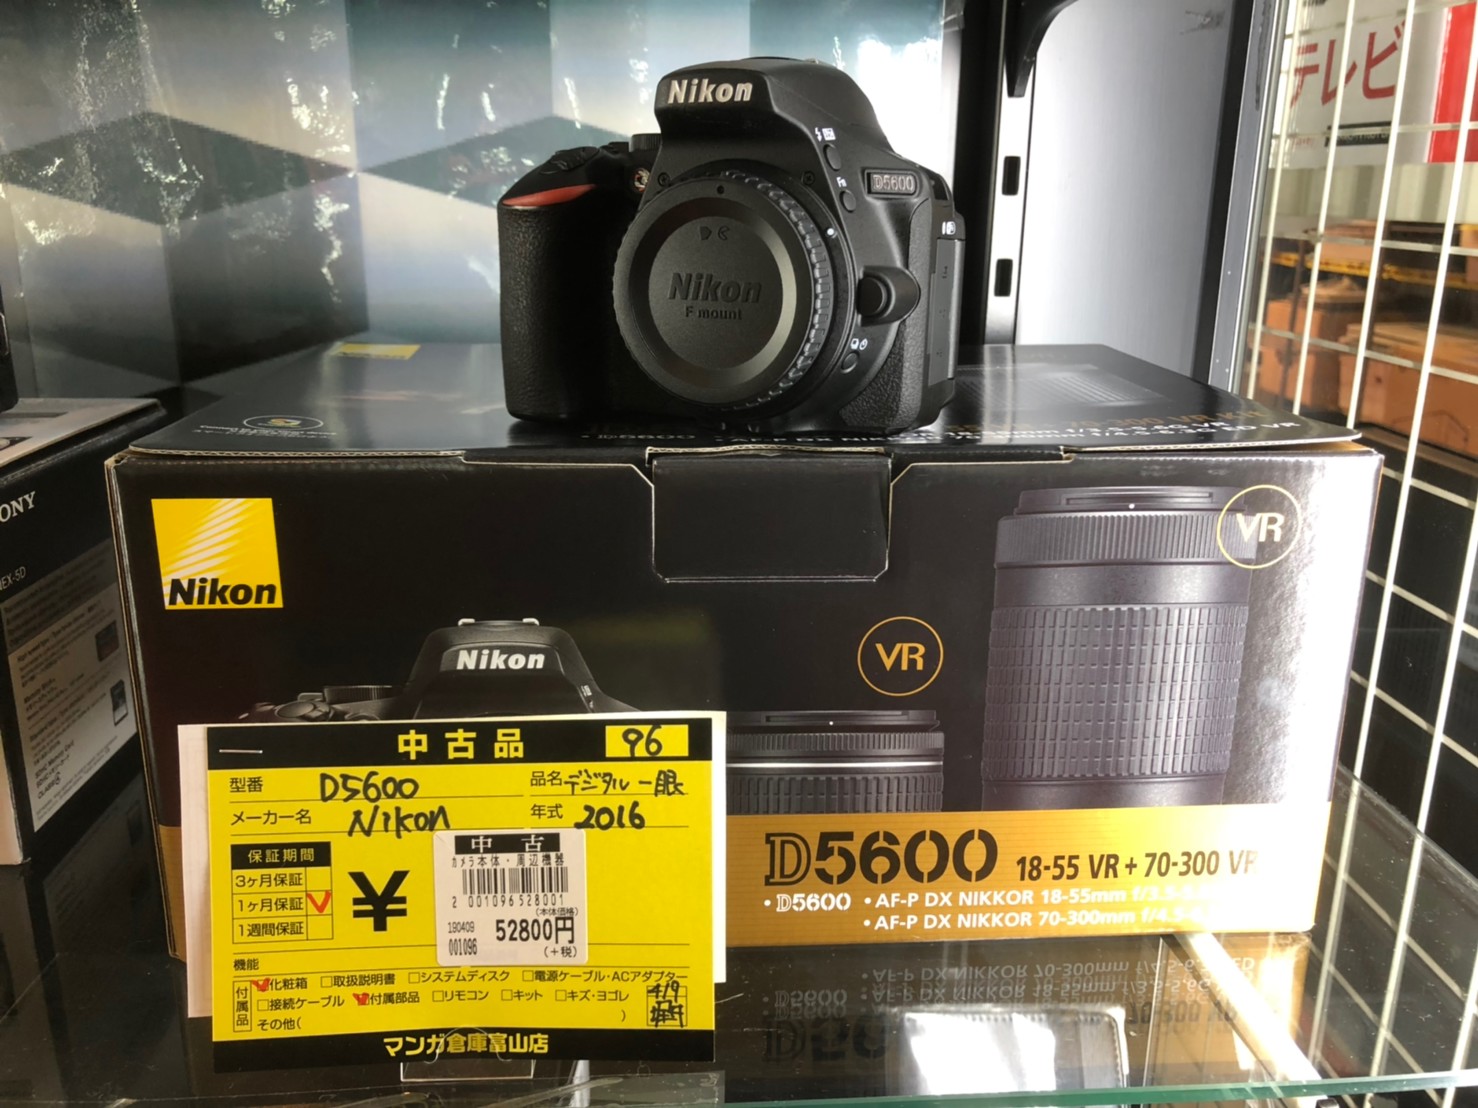 人気を誇る Nikon ダブルズームキット D5600 - デジタルカメラ - hlt.no